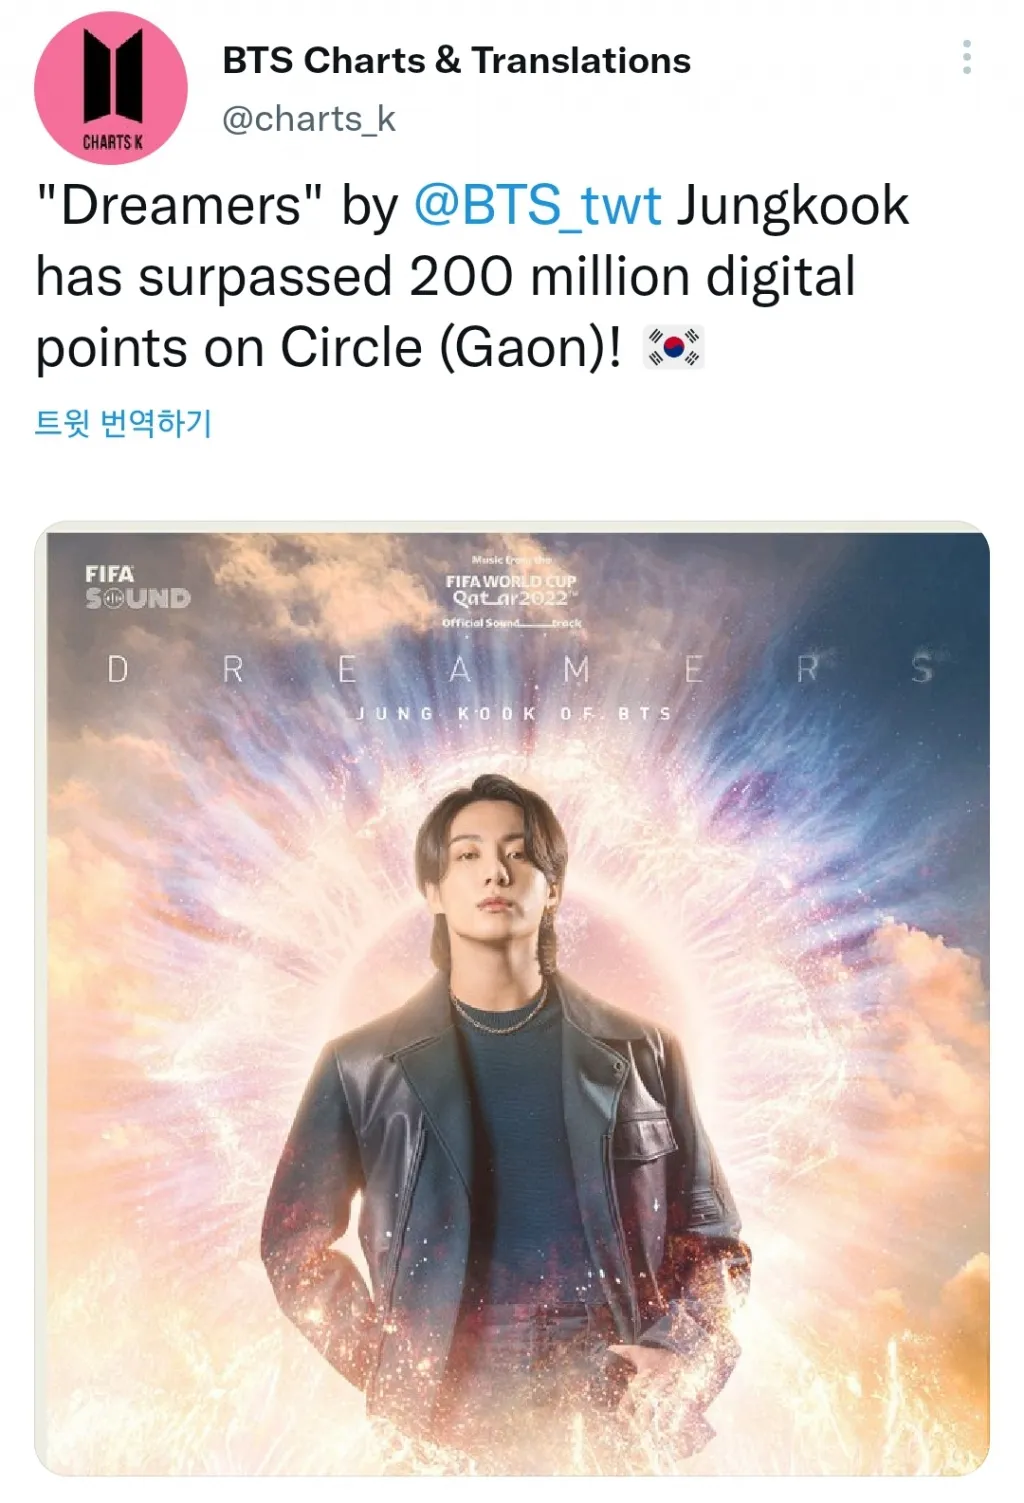 Il grafico circolare "Dreamers" di BTS Jungkook ha superato i 200 milioni di punti digitali. "Potente potenza della sorgente sonora"